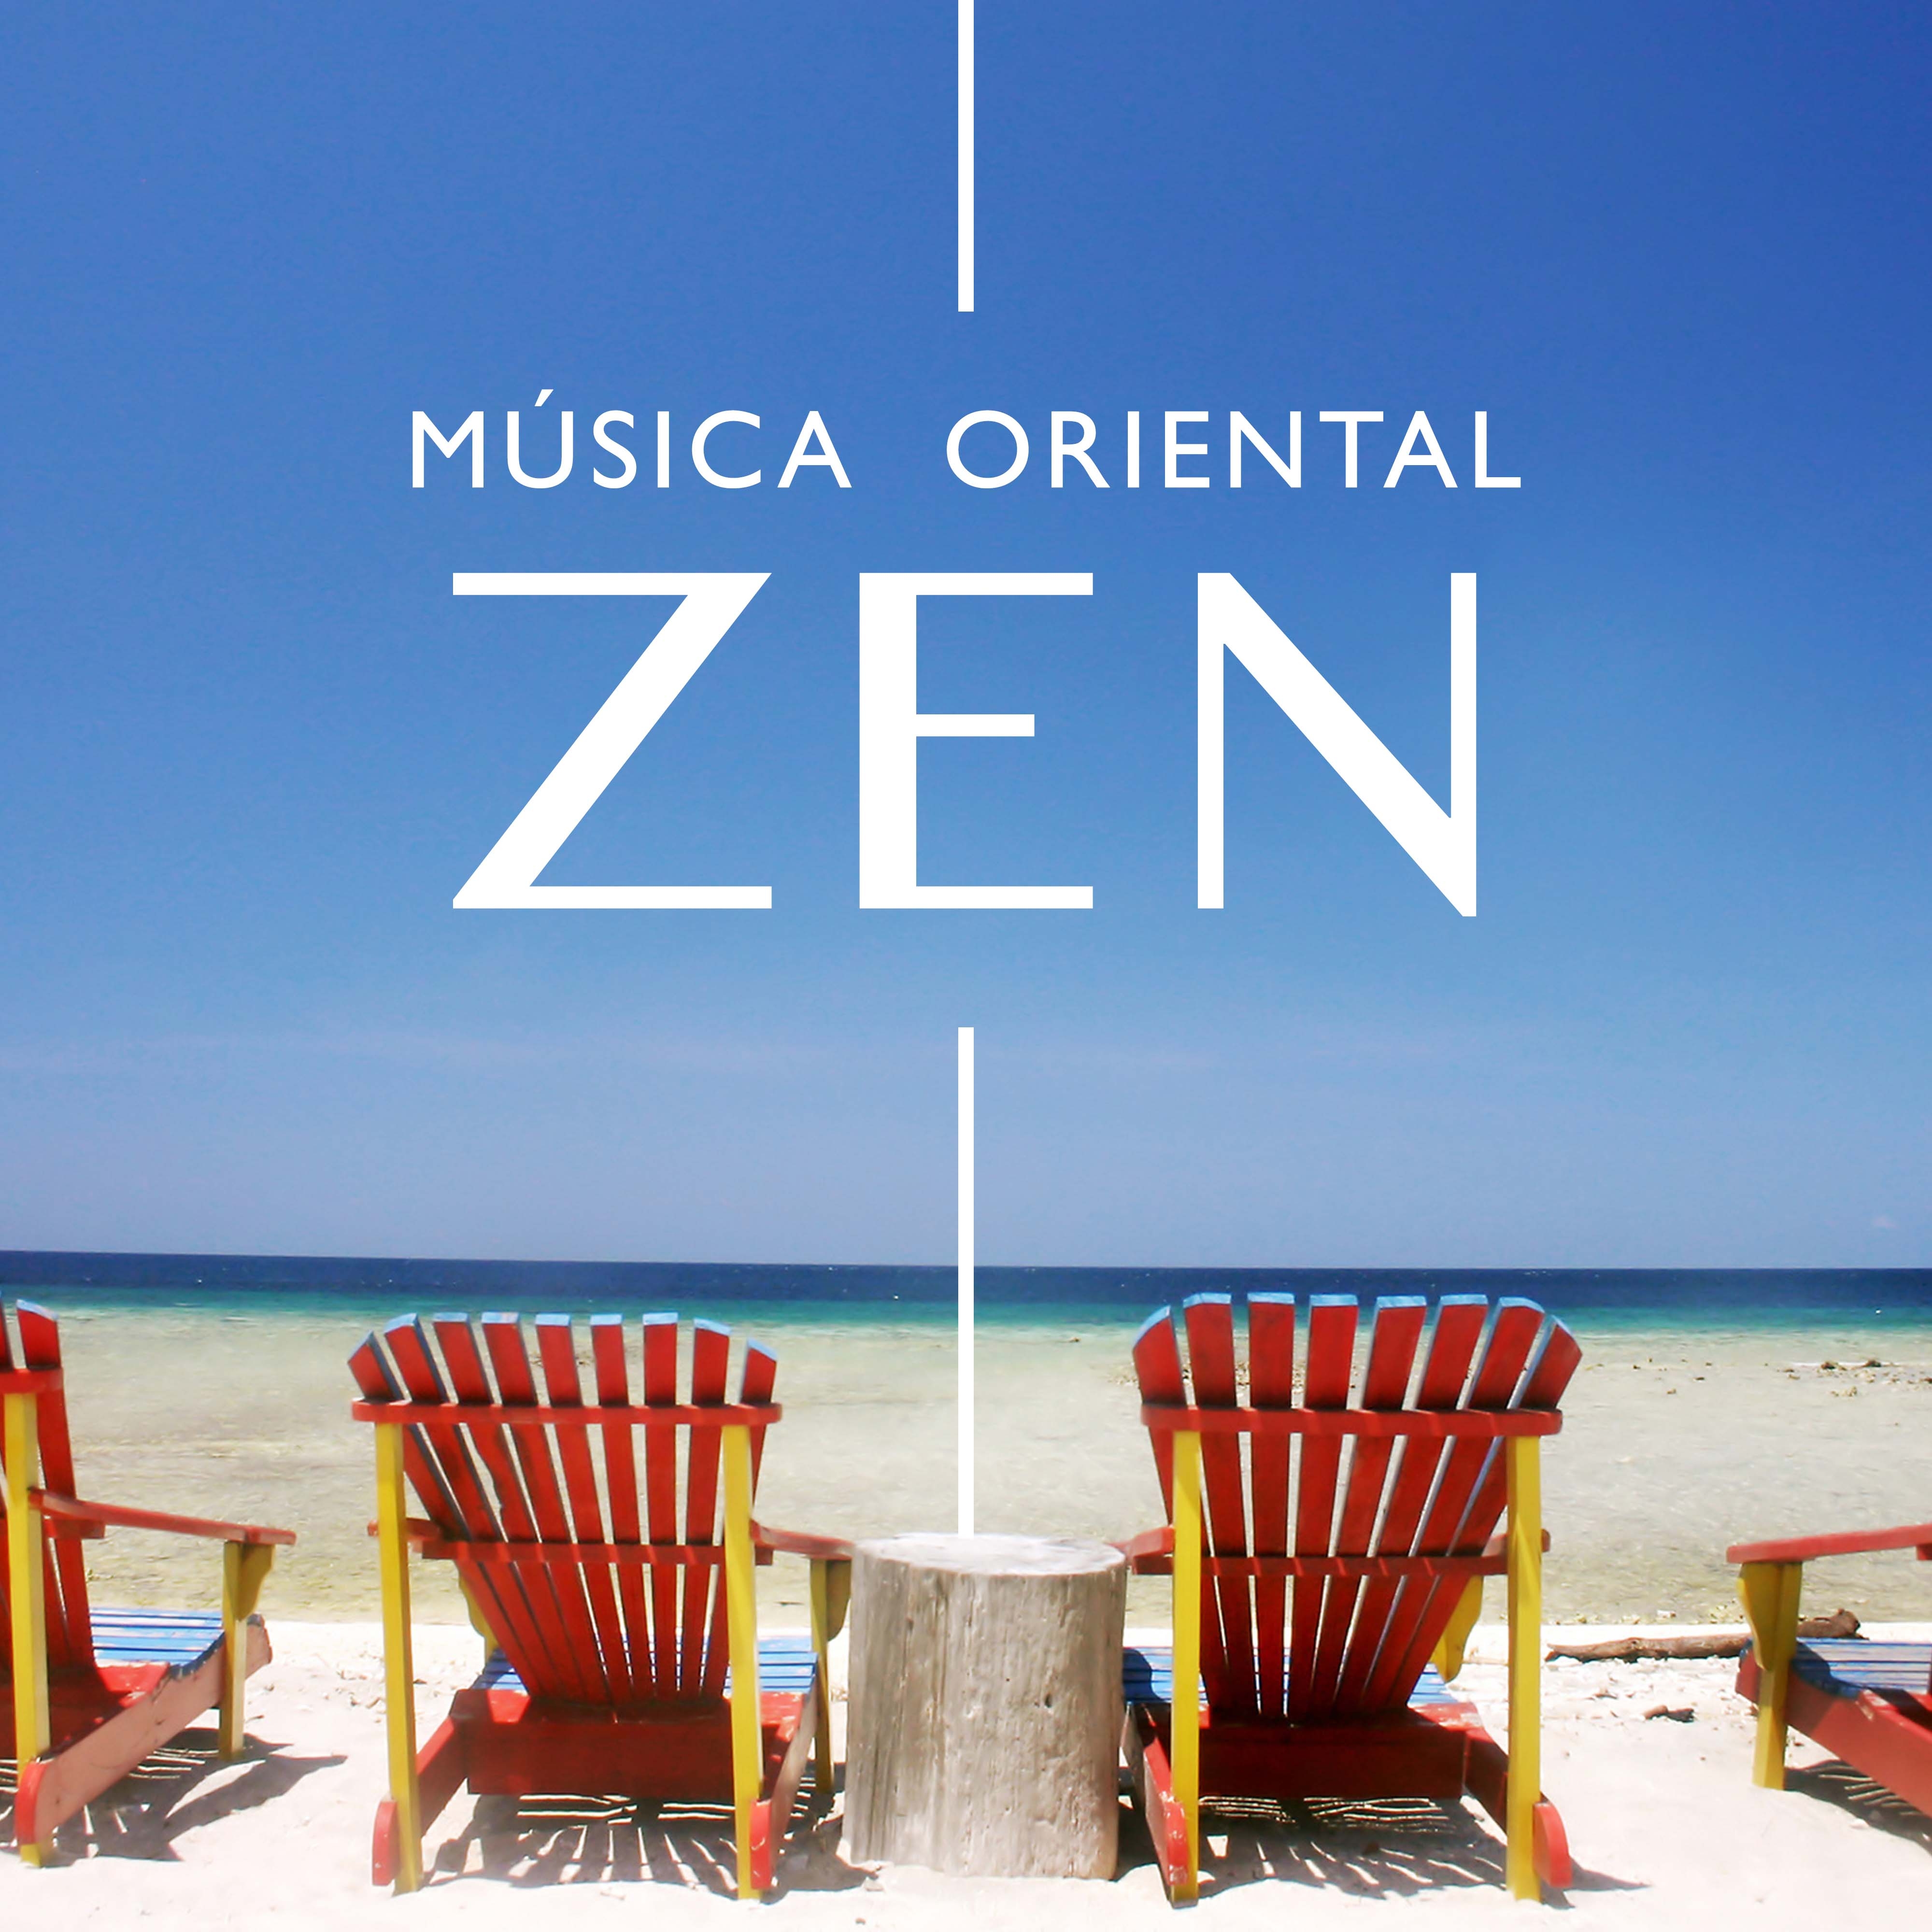 Música Zen Oriental - Musica de Relaxamento